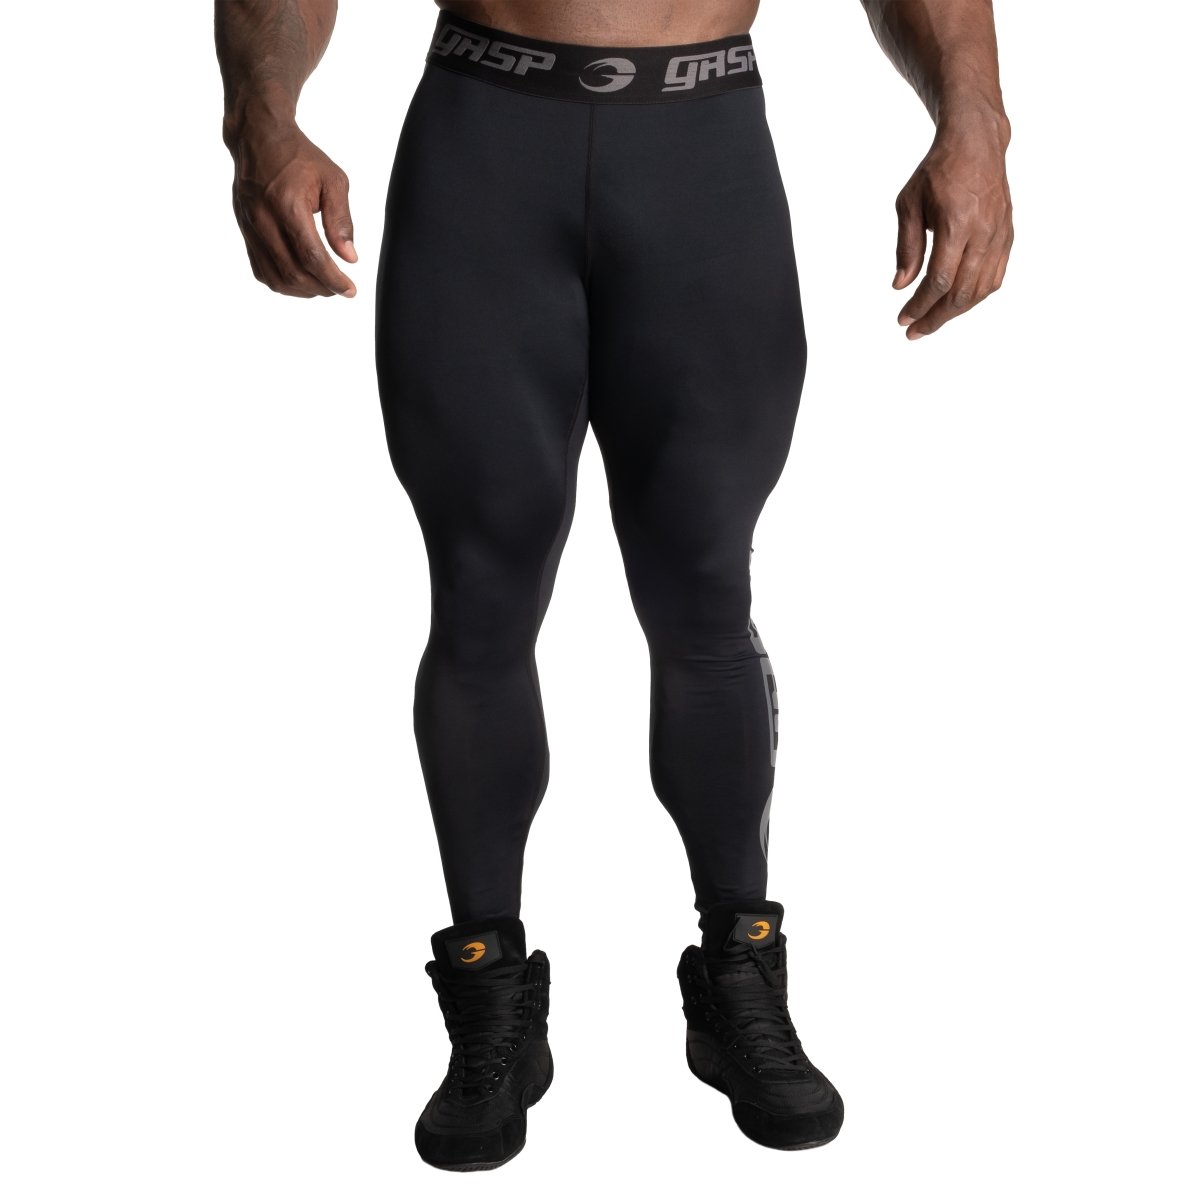 GASP Core Tights - Black - Urban Gym Wear